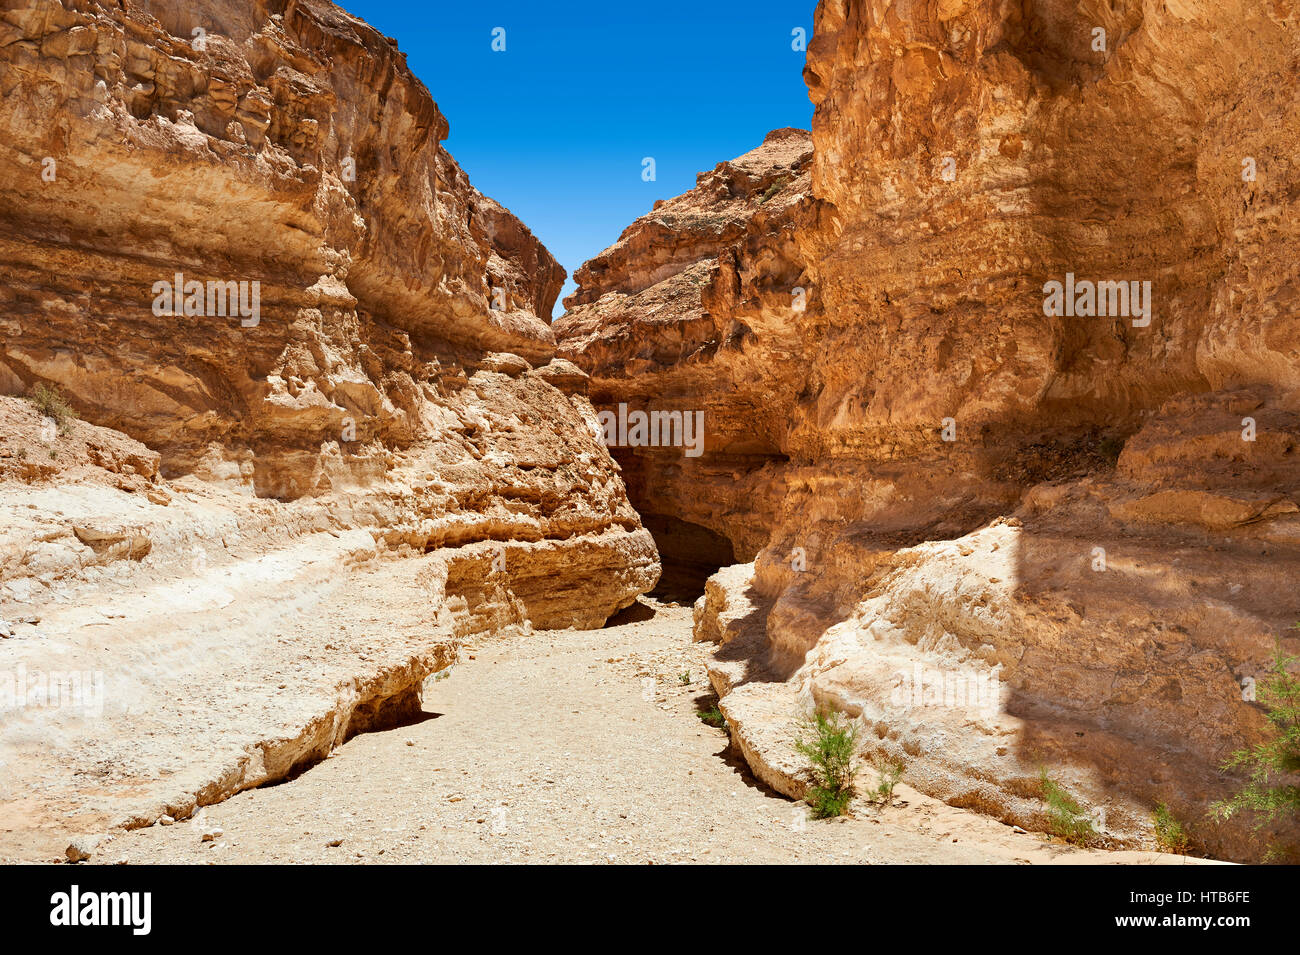 Le désert près du canyon de Mides oasis du Sahara, Tunisie, Afrique du Nord Banque D'Images